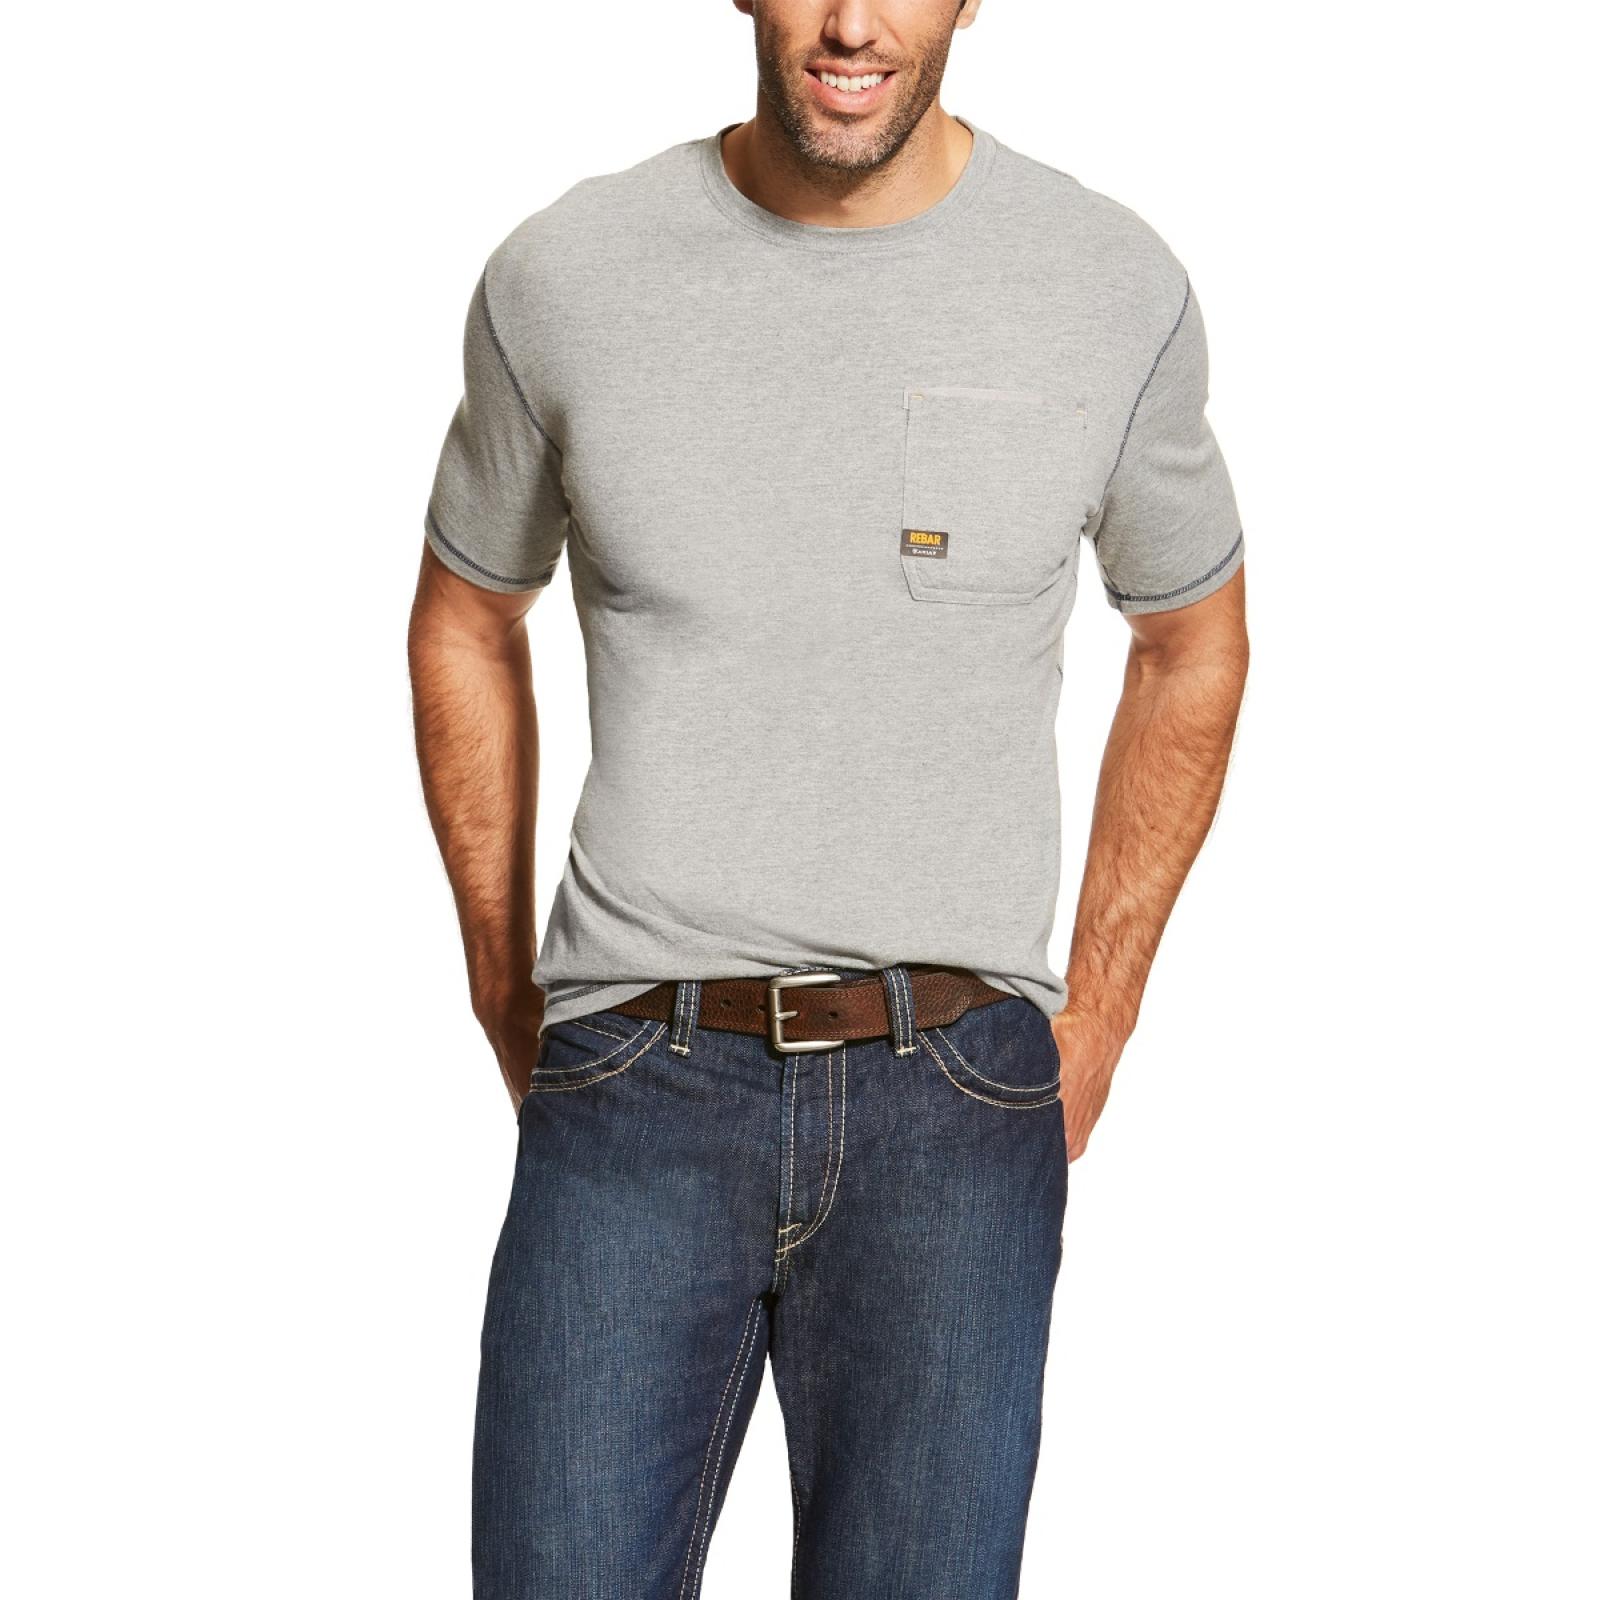 Ariat Rebar Workman Short Sleeve T-Shirt